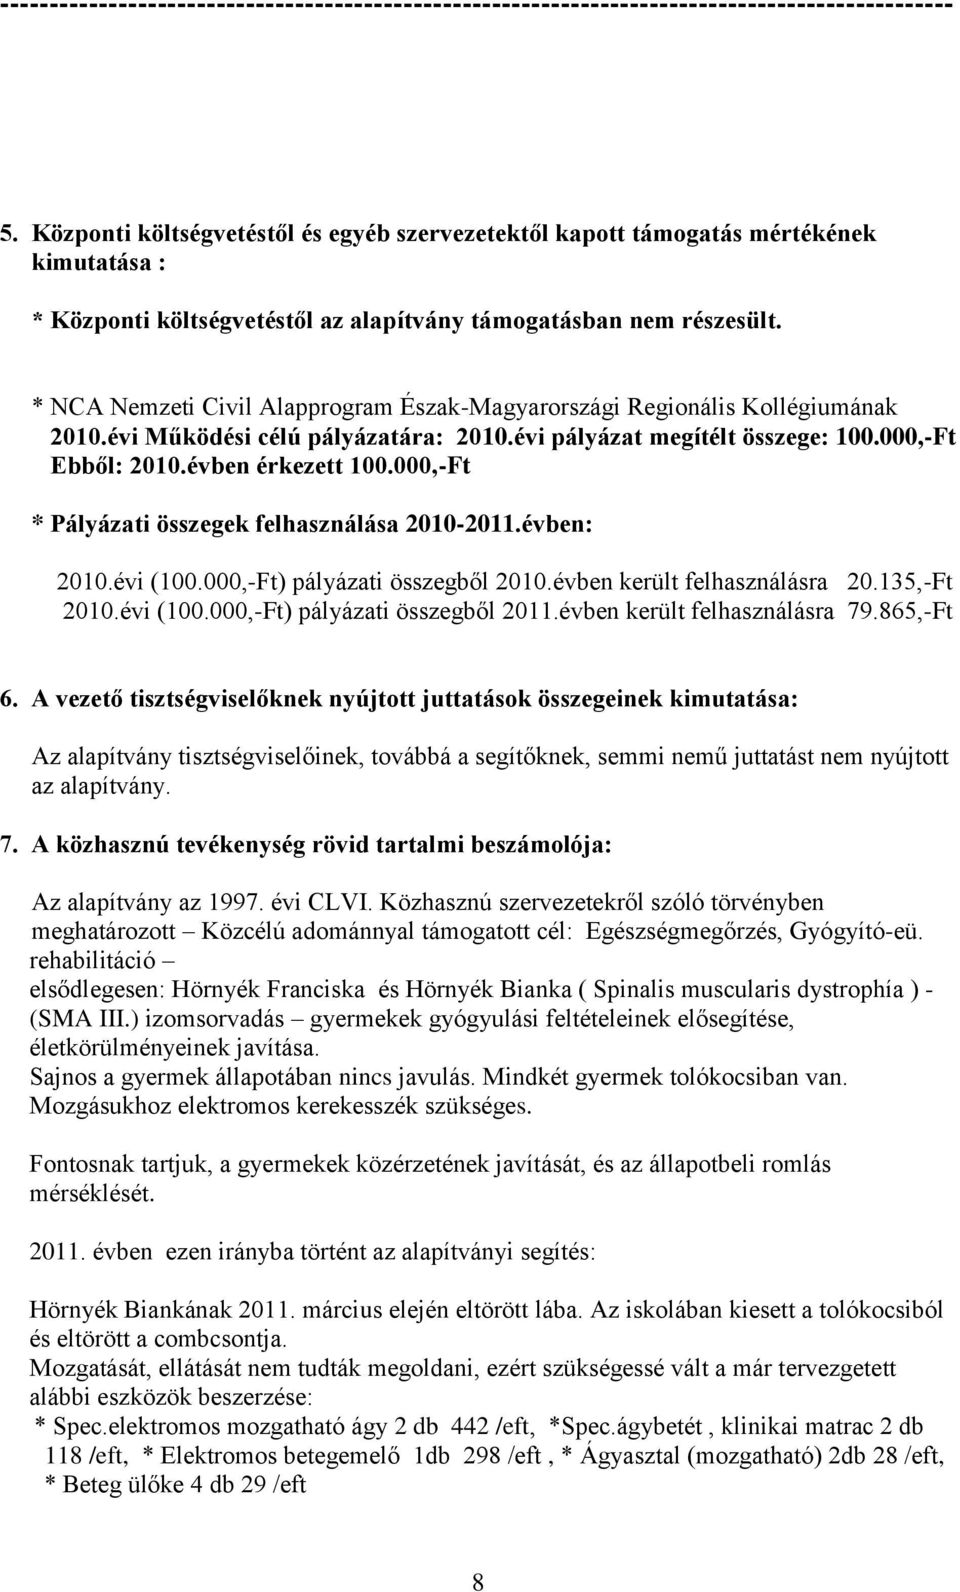 * NCA Nemzeti Civil Alapprogram Észak-Magyarországi Regionális Kollégiumának 2010.évi Működési célú pályázatára: 2010.évi pályázat megítélt összege: 100.000,-Ft Ebből: 2010.évben érkezett 100.